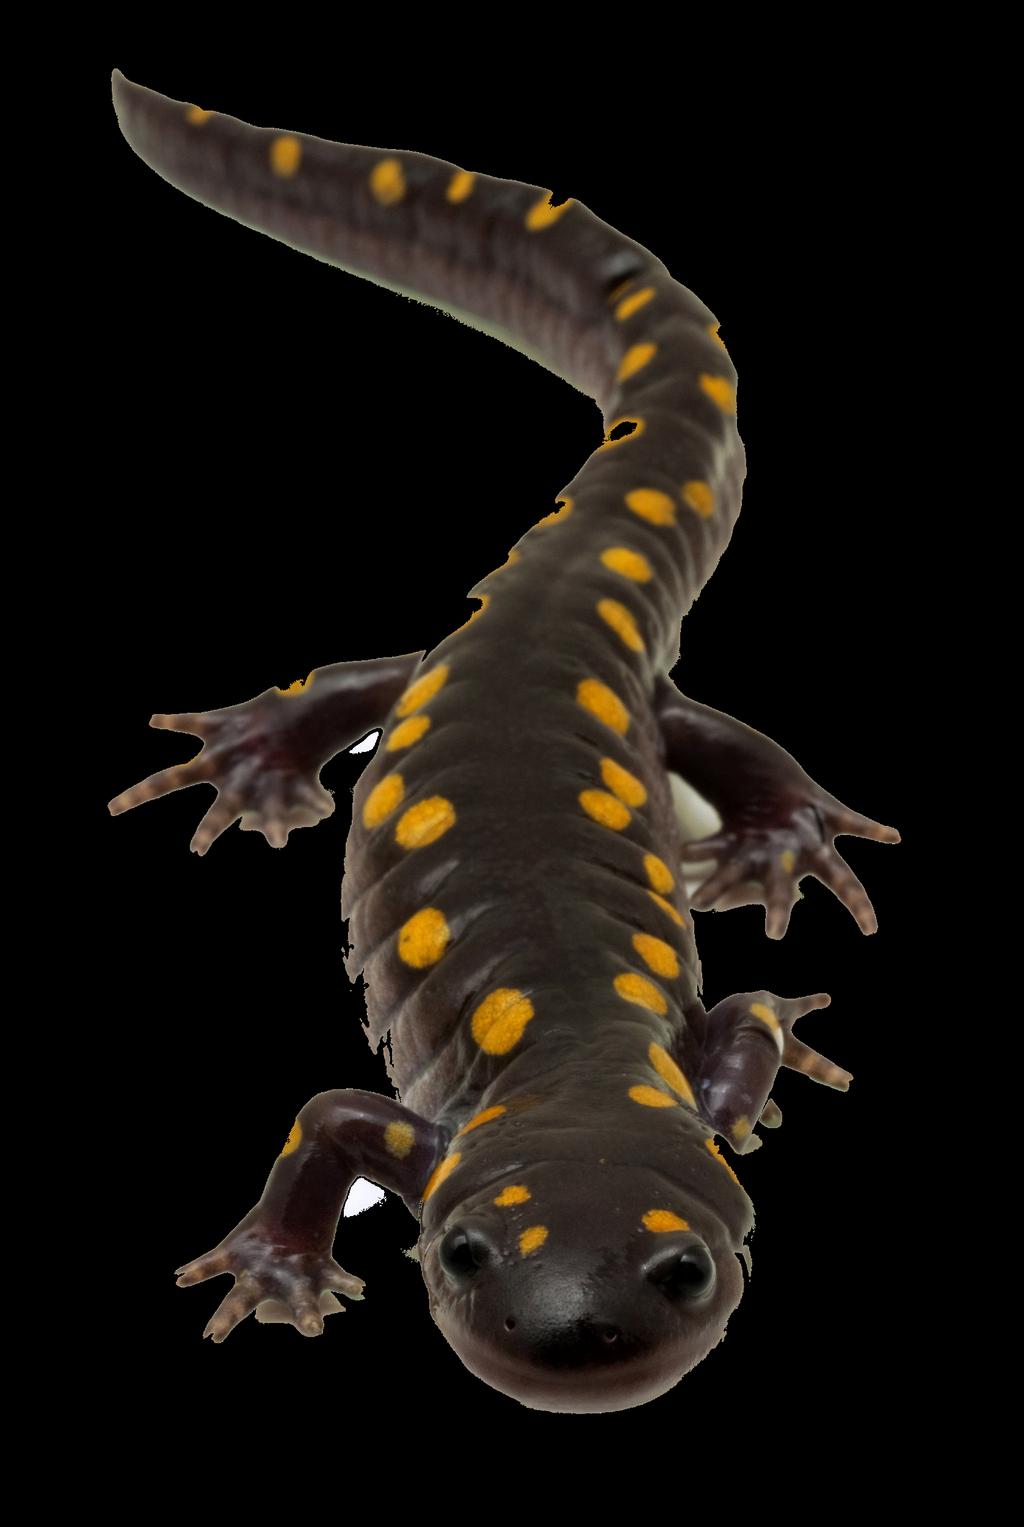 Can adult salamanders breathe underwater?